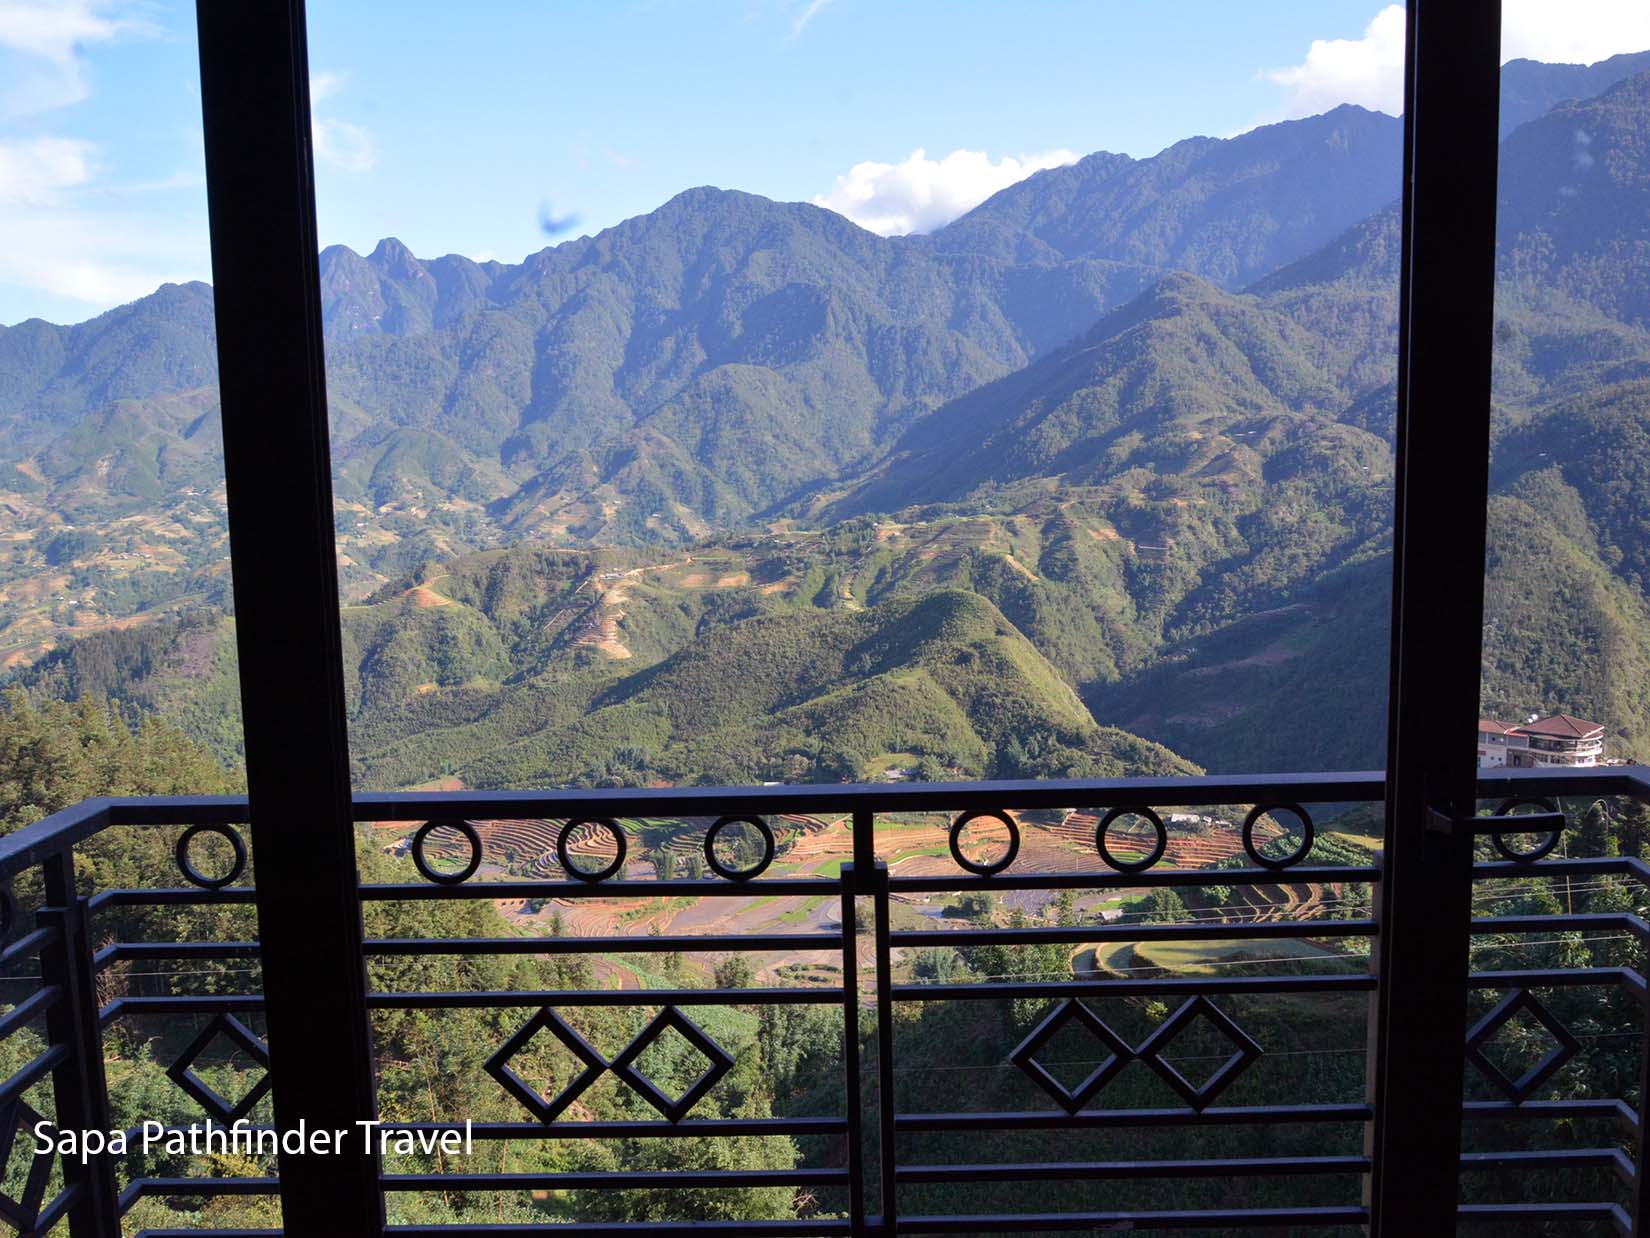 Trong Tour này, quí khách sẽ được nghỉ dưỡng tại khách sạn Vista Sapa, Khách sạn yên tĩnh, có tầm nhìn tuyệt đẹp đến dãy núi Fansipan và thung lũng Mường hoa